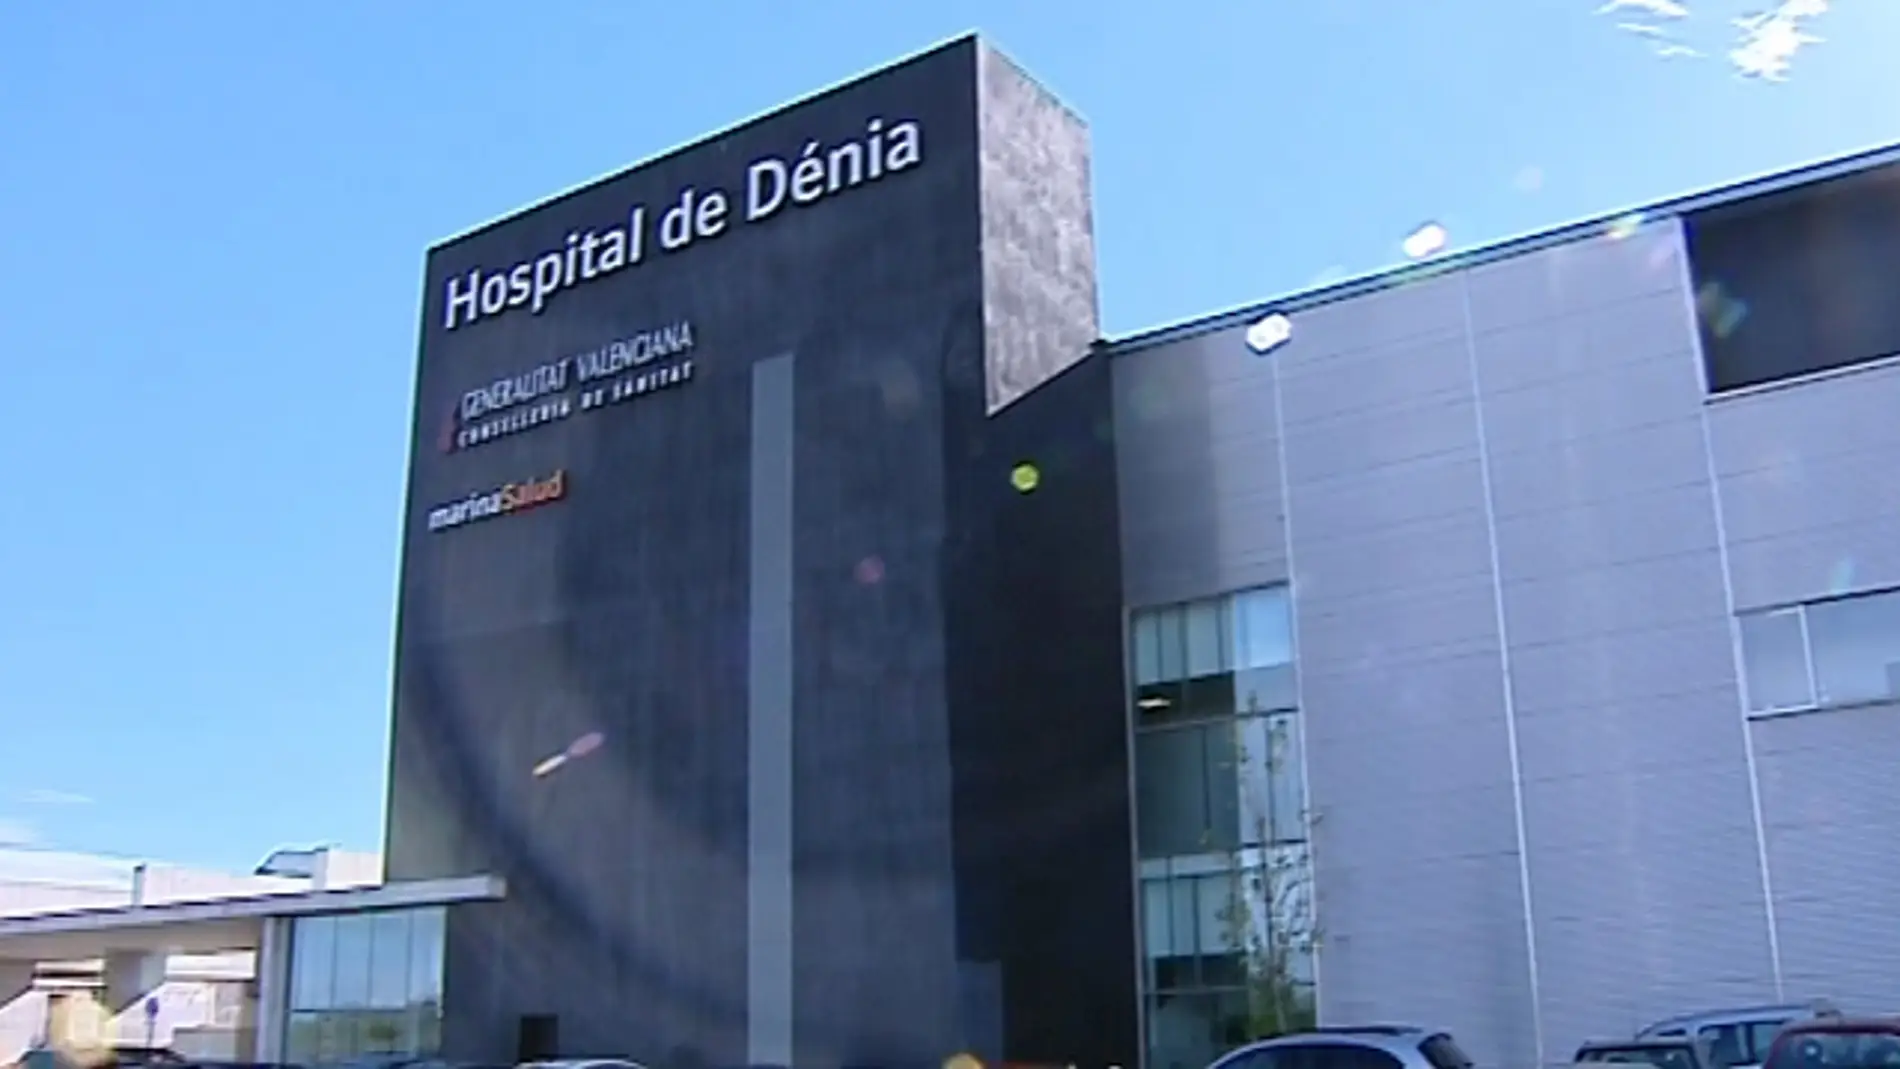 Hospital Denia